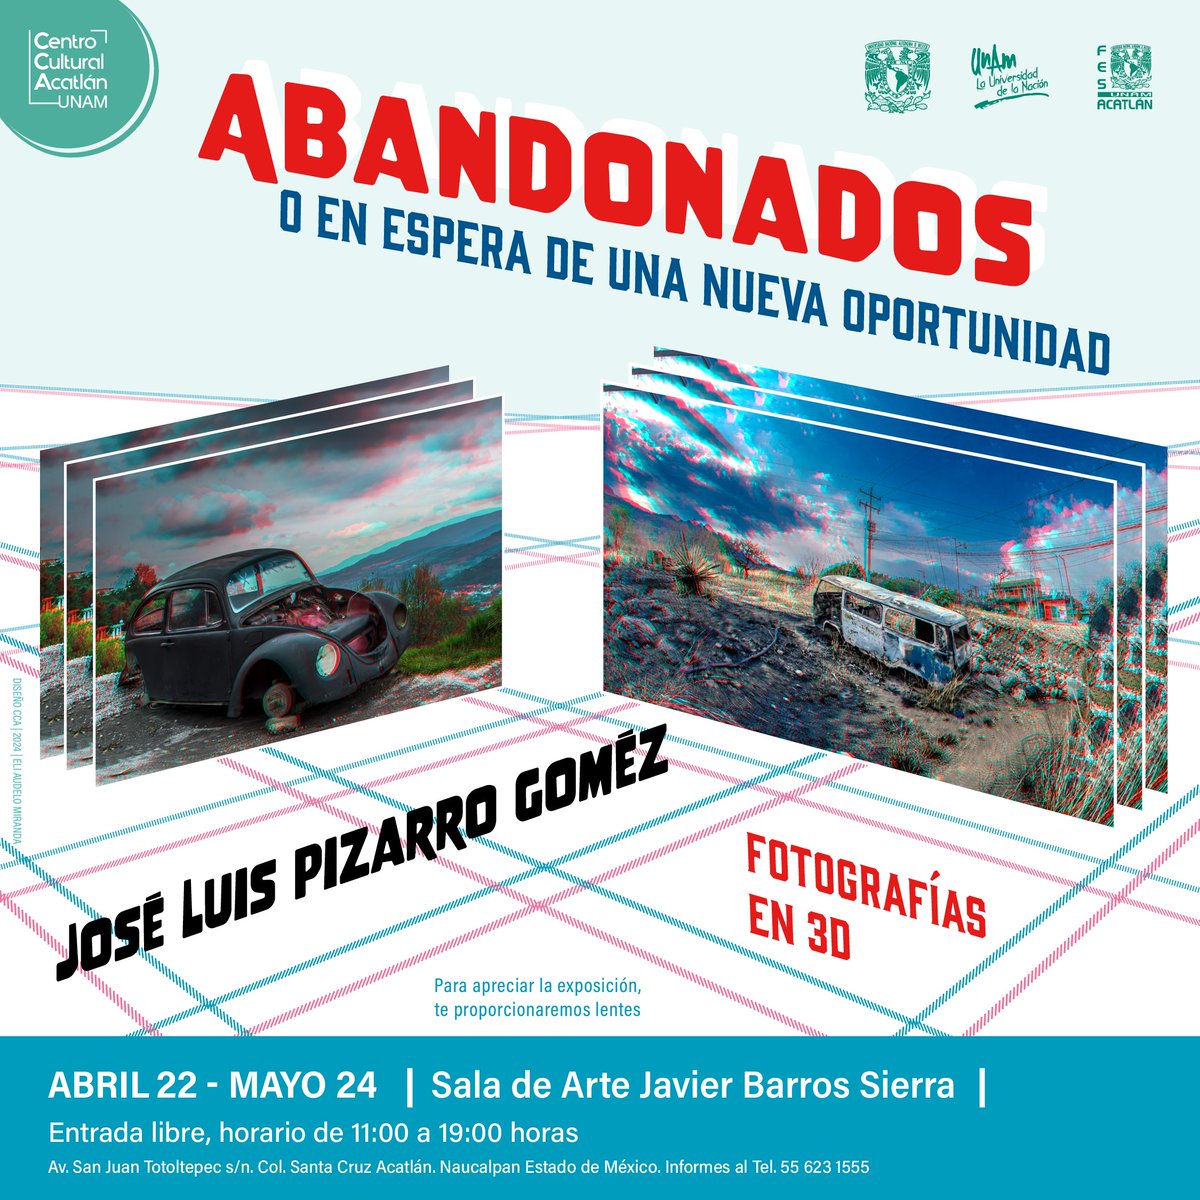 No te pierdas 'Abandonados o en espera de una nueva oportunidad', la galería estará en la Sala de Arte Javier Barros Sierra hasta el día 24 de mayo. Entrada libre ¡No faltes!